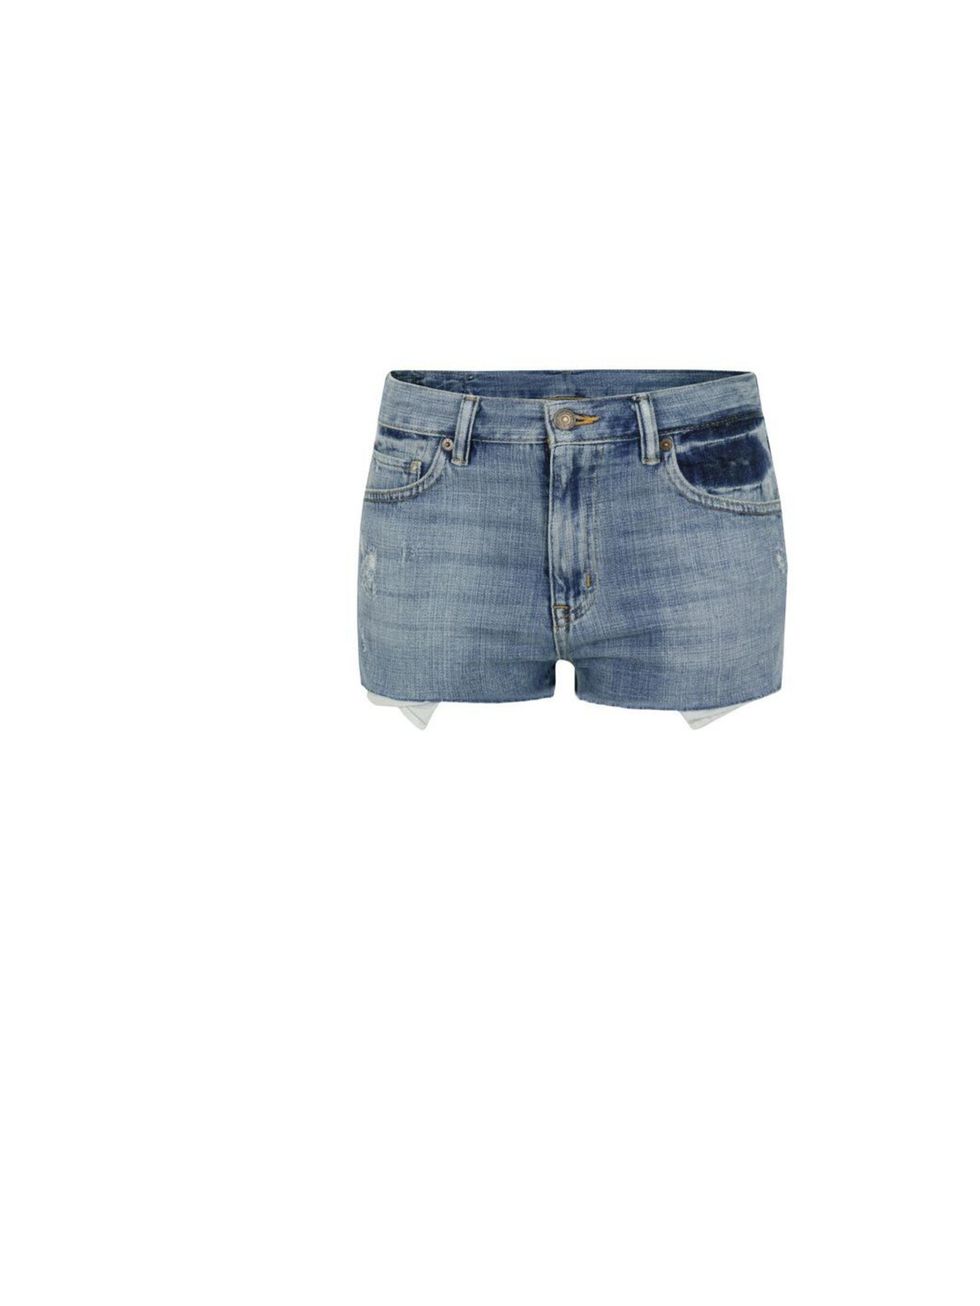 <p>Denim &amp; Supply Ralph Lauren cut-off shorts, £80, at <a href="http://www.coggles.com/item/Denim-and-Supply-Ralph-Lauren/Vintage-Blue-Cut-Off-Shorts/AAEI">Coggles.com</a></p>